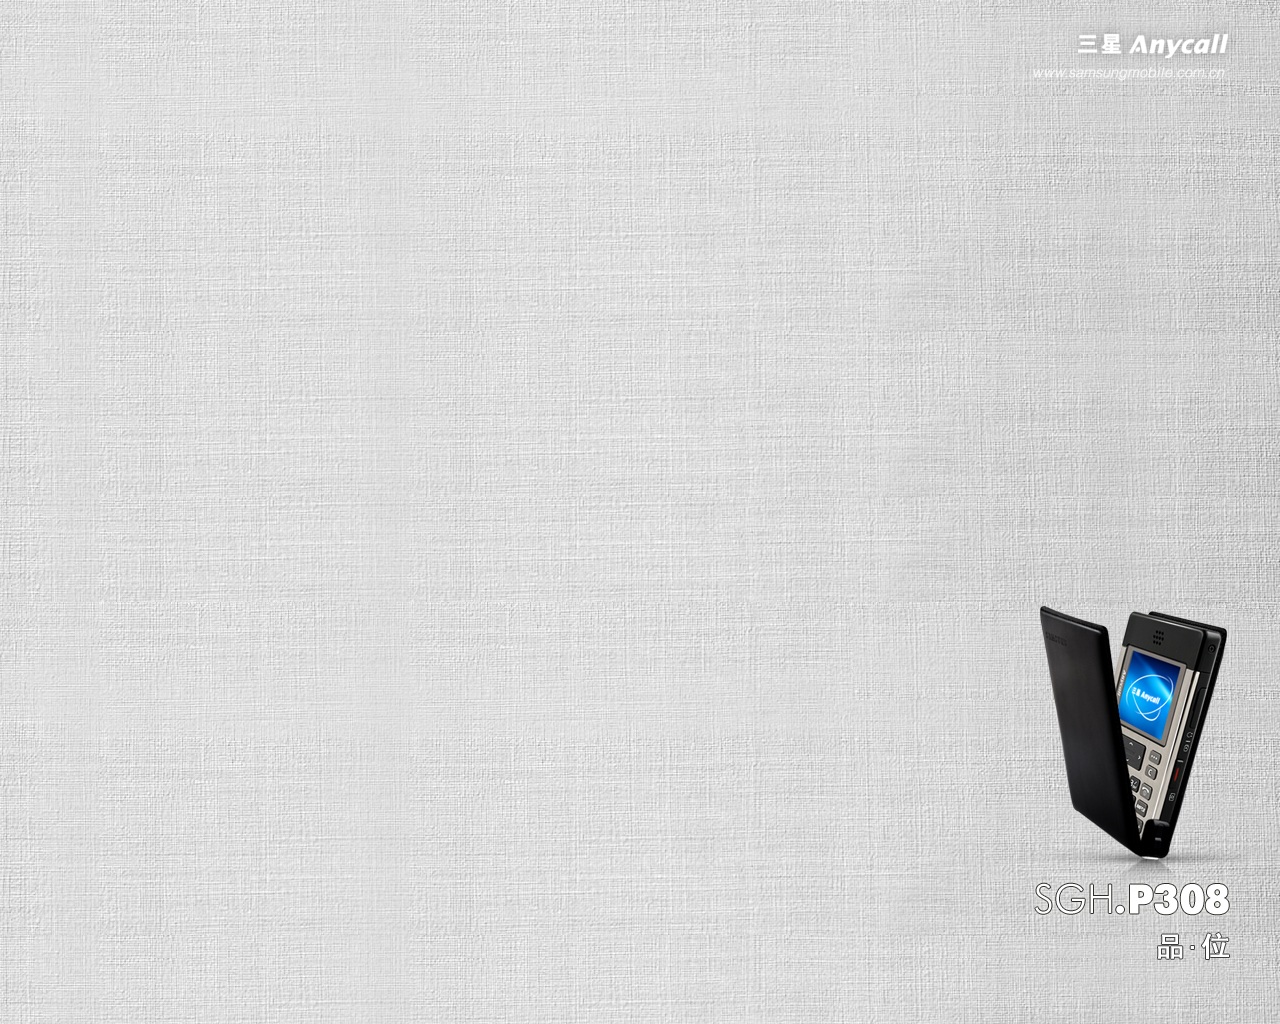 壁纸1280x1024 三星手机壁纸 Desktop Wallpaper of Samsung Mobile Phone壁纸 三星手机广告壁纸(二)-设计篇壁纸 三星手机广告壁纸(二)-设计篇图片 三星手机广告壁纸(二)-设计篇素材 广告壁纸 广告图库 广告图片素材桌面壁纸